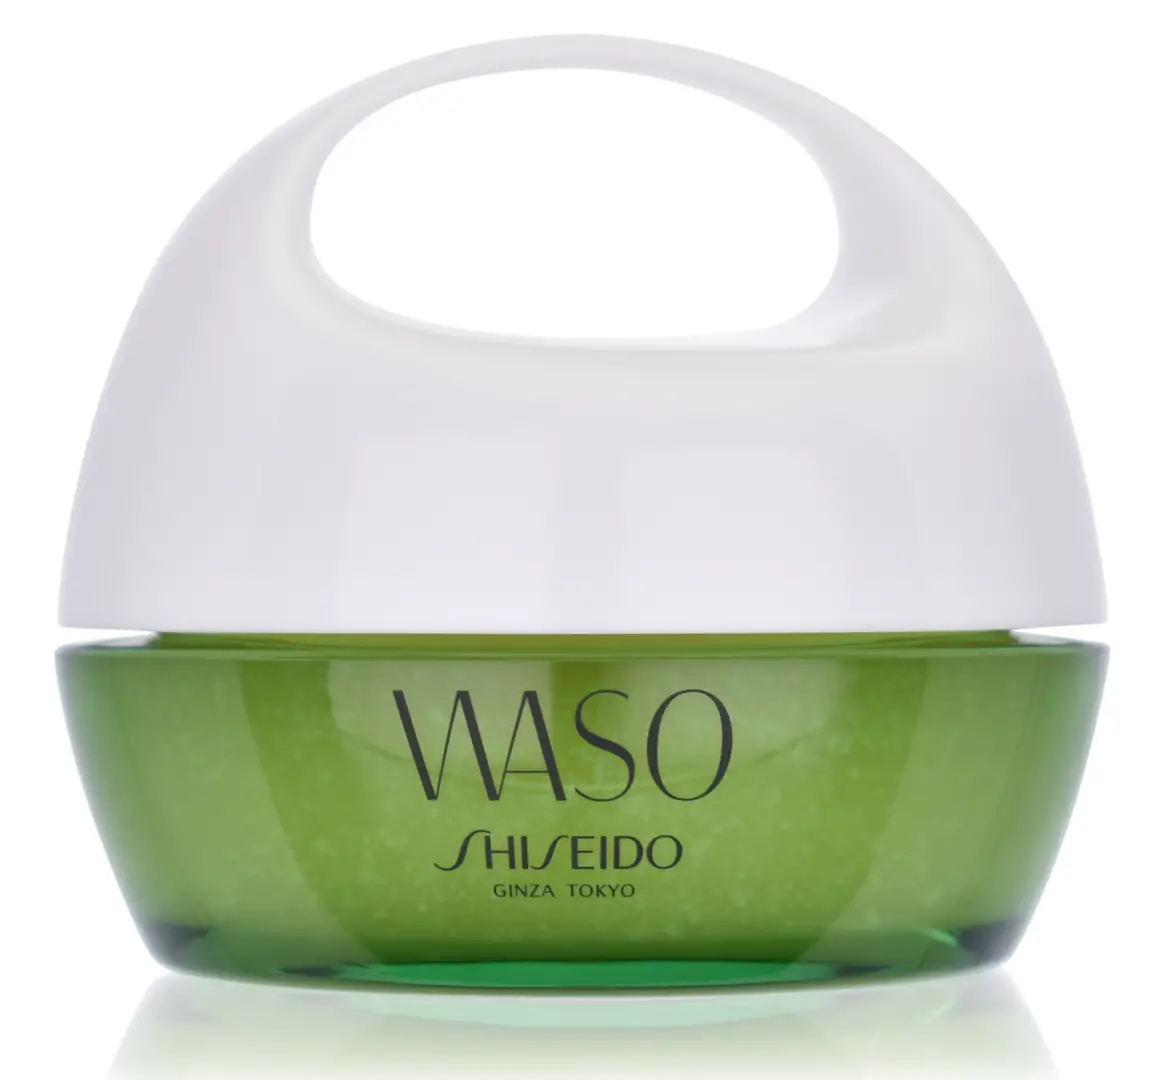 Shiseido Waso